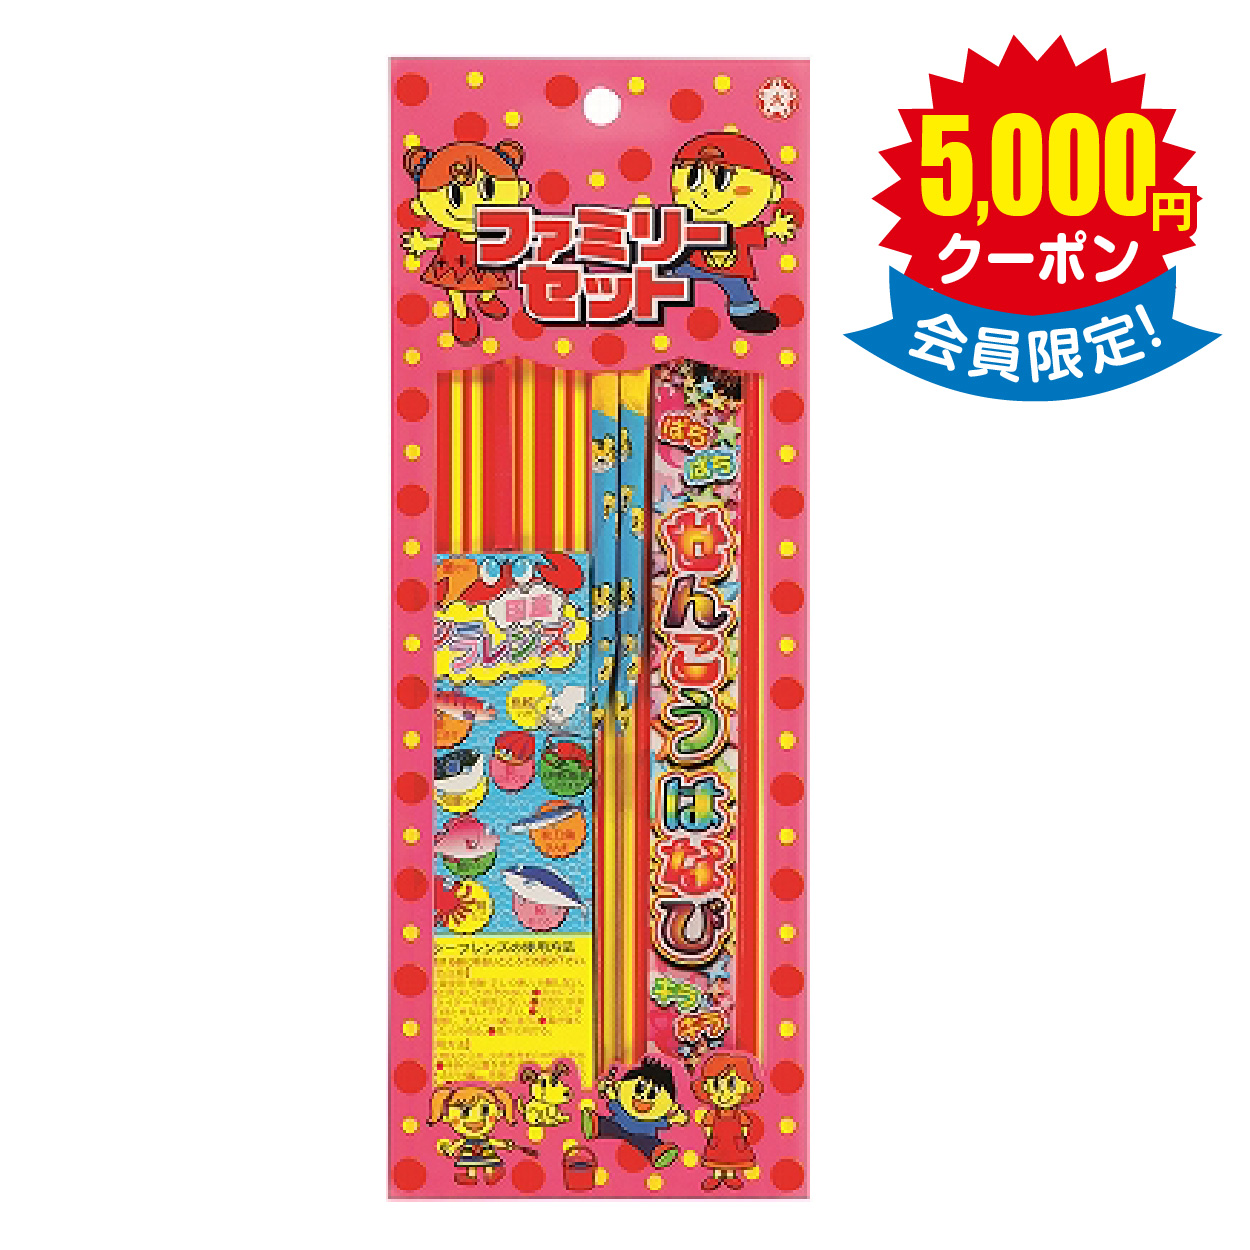 【煙火店直送品】ファミリーセットNo.100 × 400セット